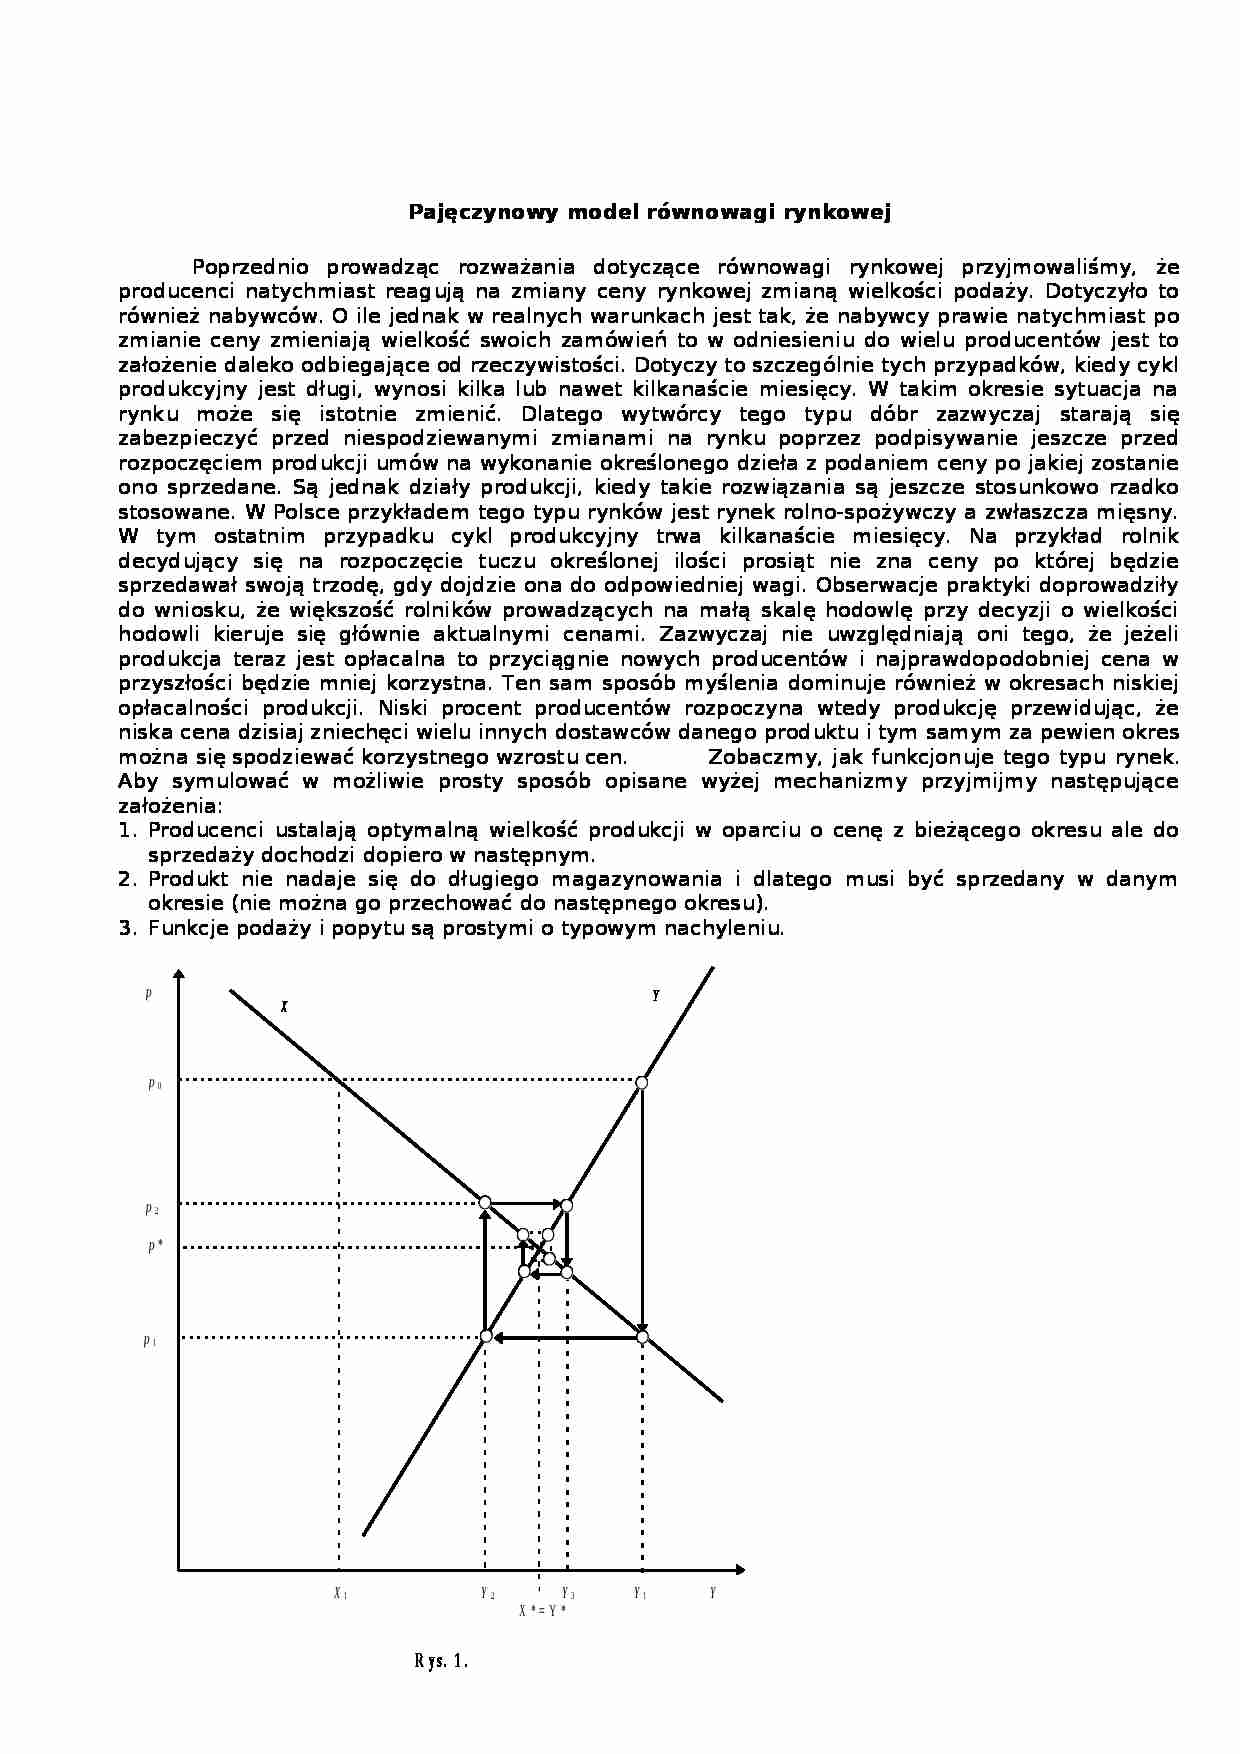 Pajęczynowy model równowagi rynkowej-opracowanie - strona 1